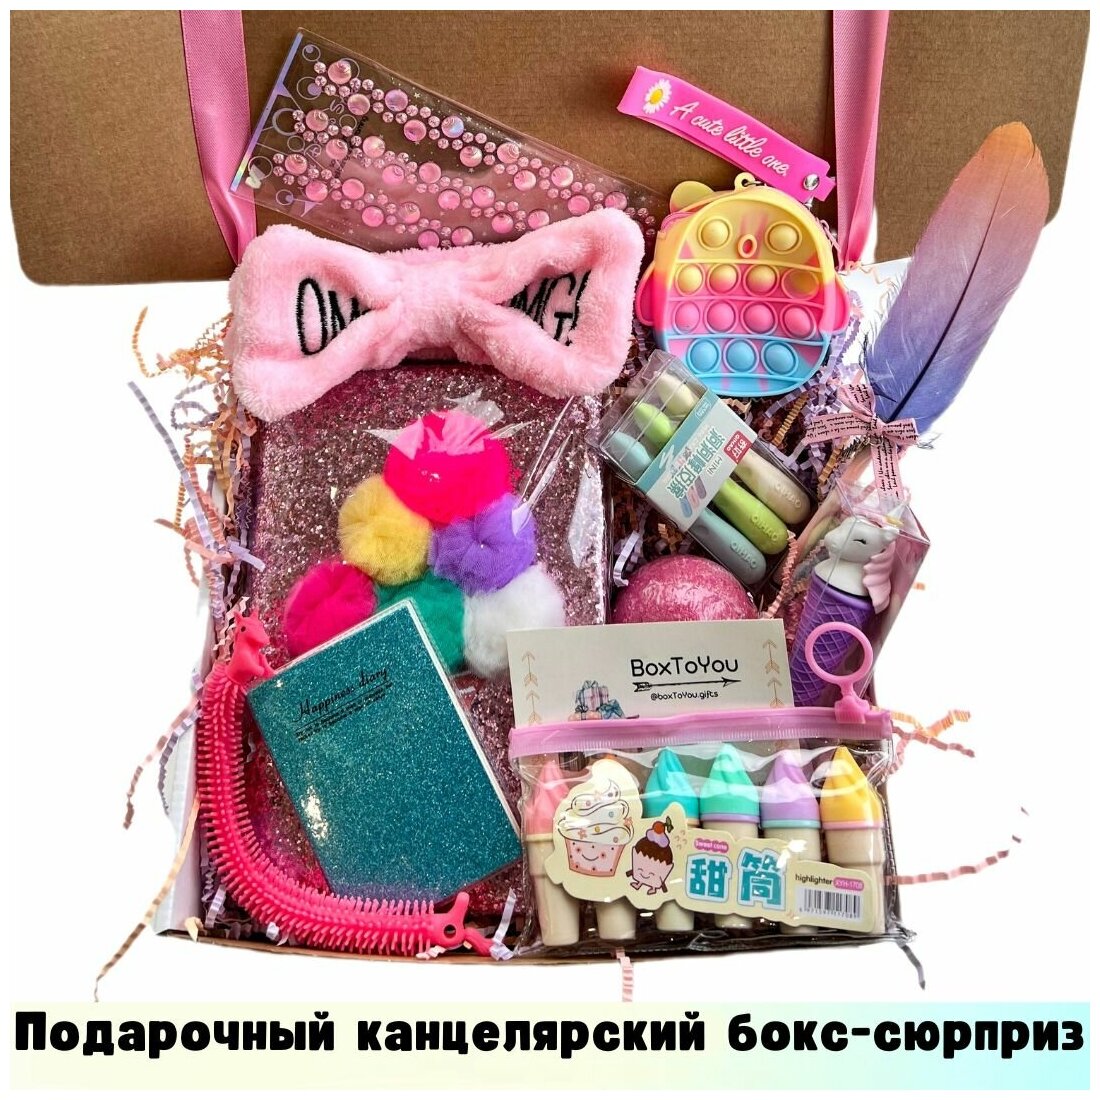 Подарочный набор для девочки / Подарок на день рождения / Канцелярия для школы / Детский сюрприз бокс / 18 товаров